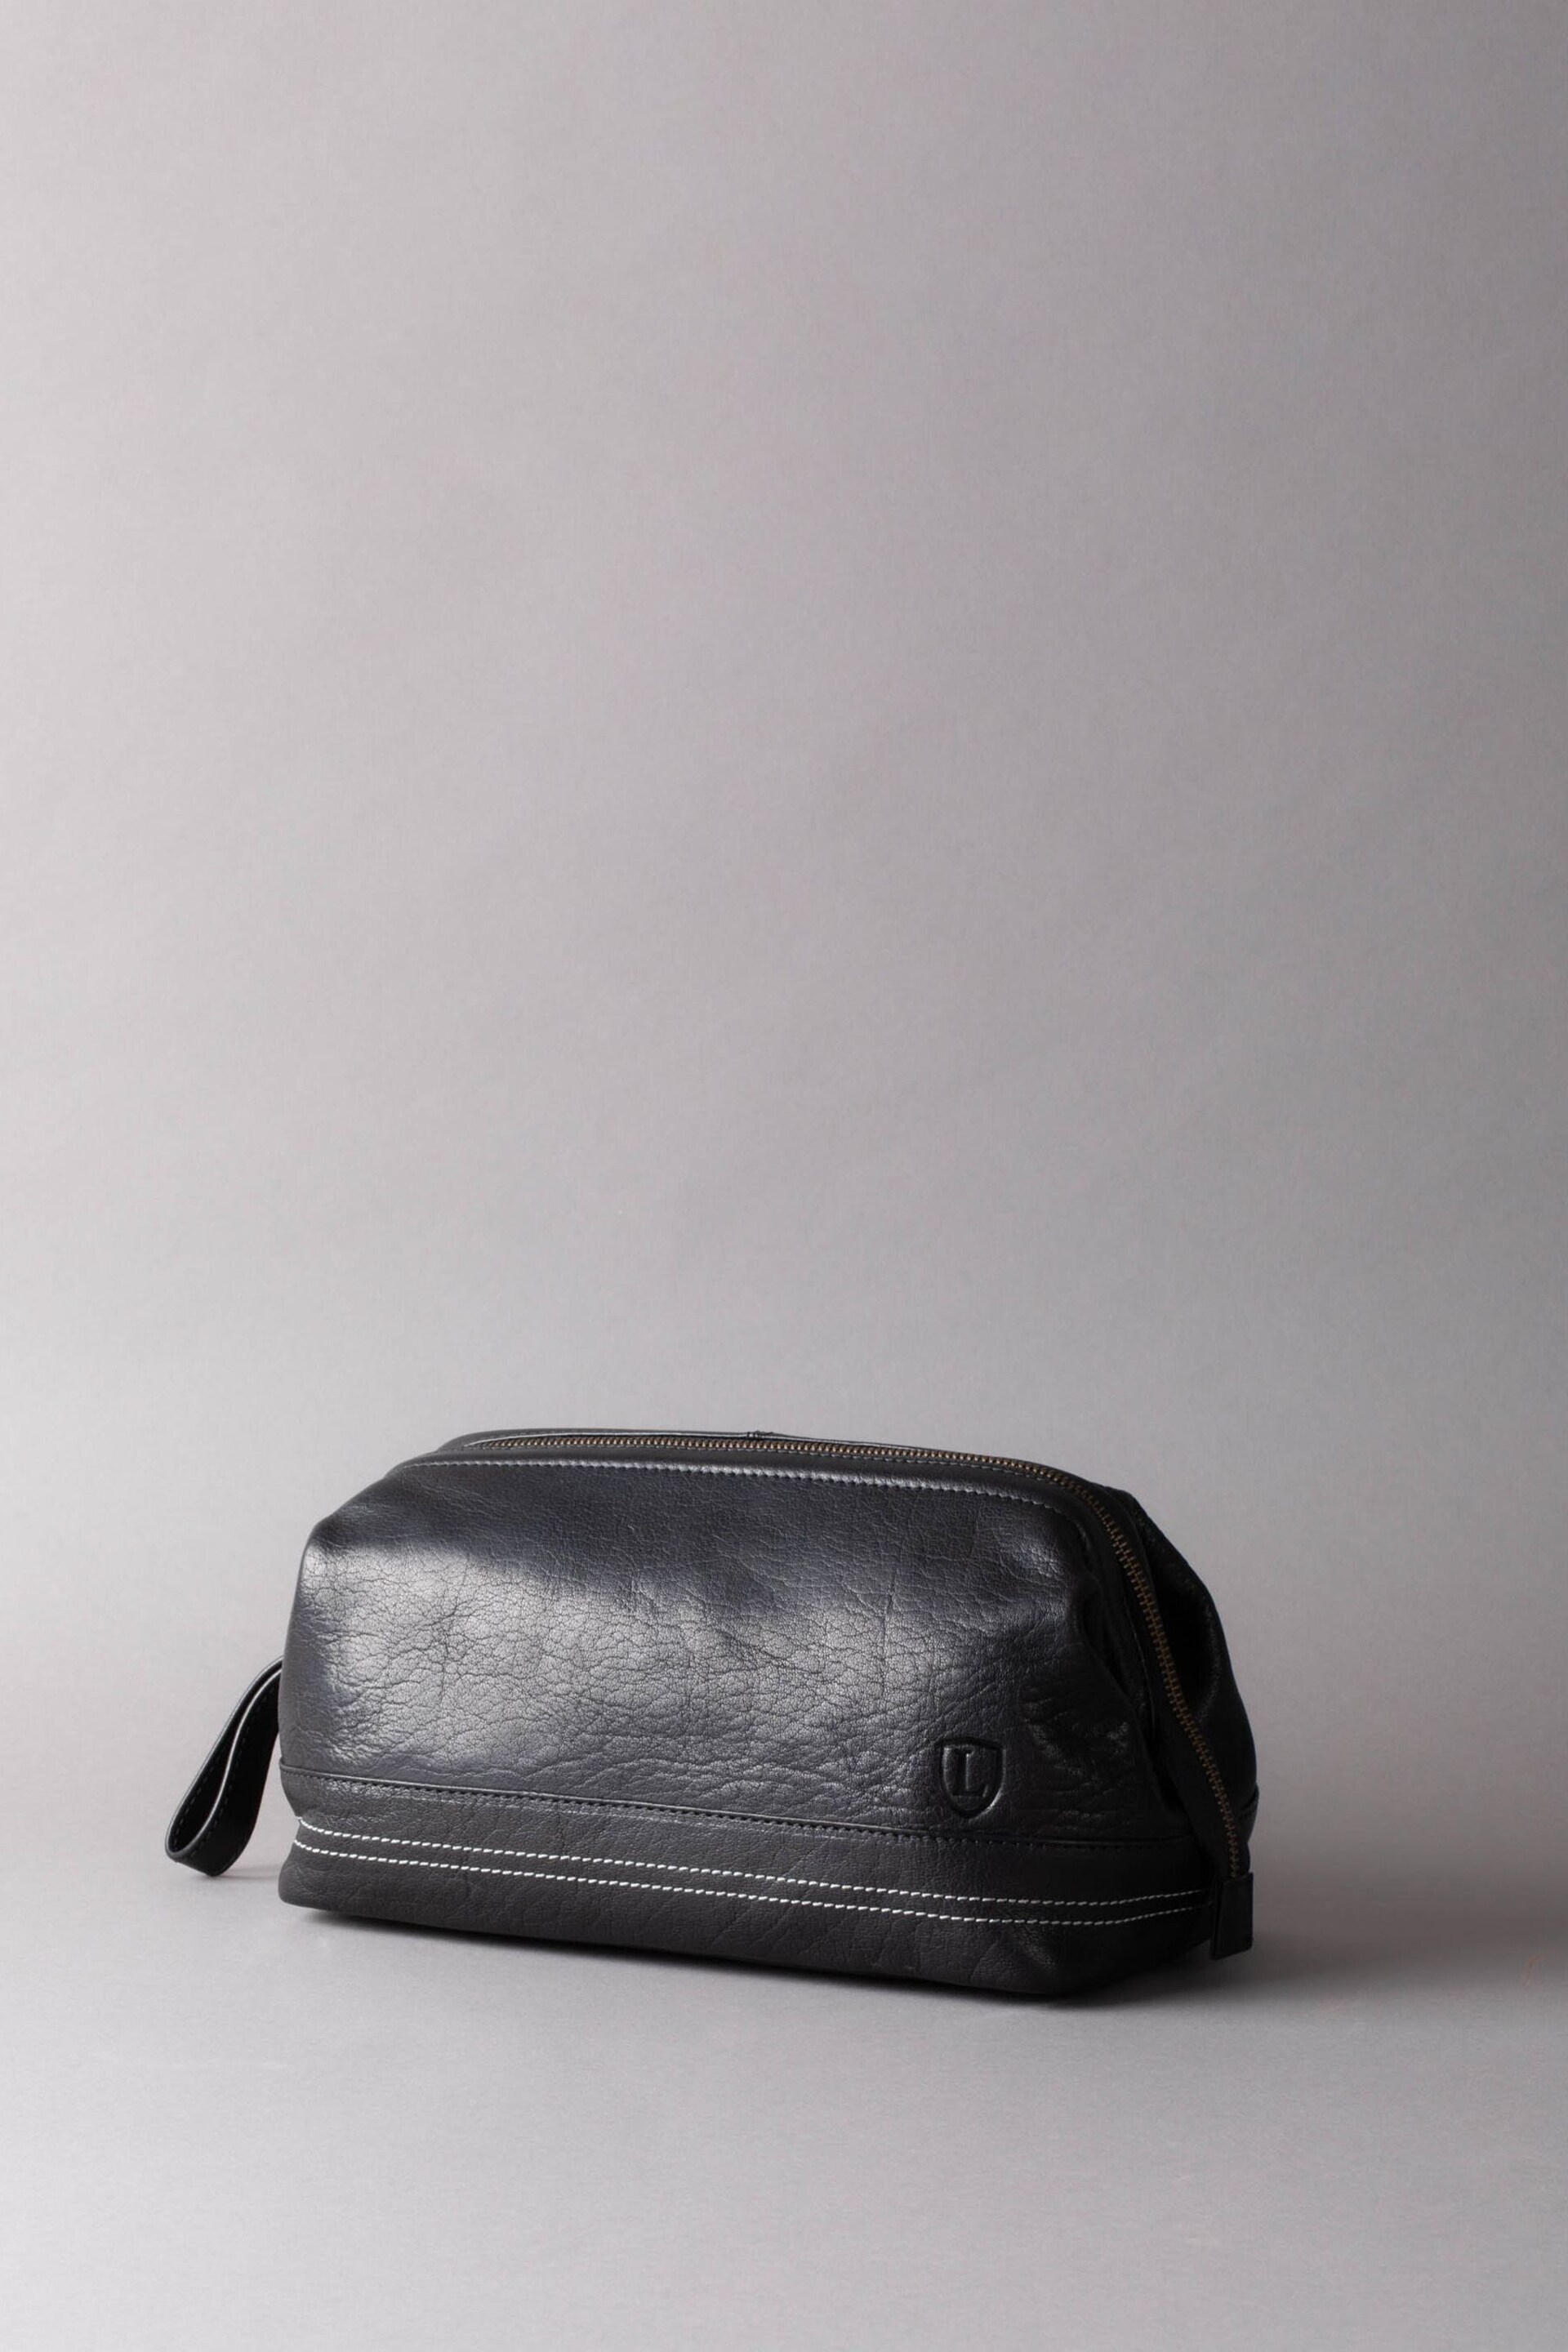 Lakeland Leather Black Keswick Leather Washbag - Image 1 of 5